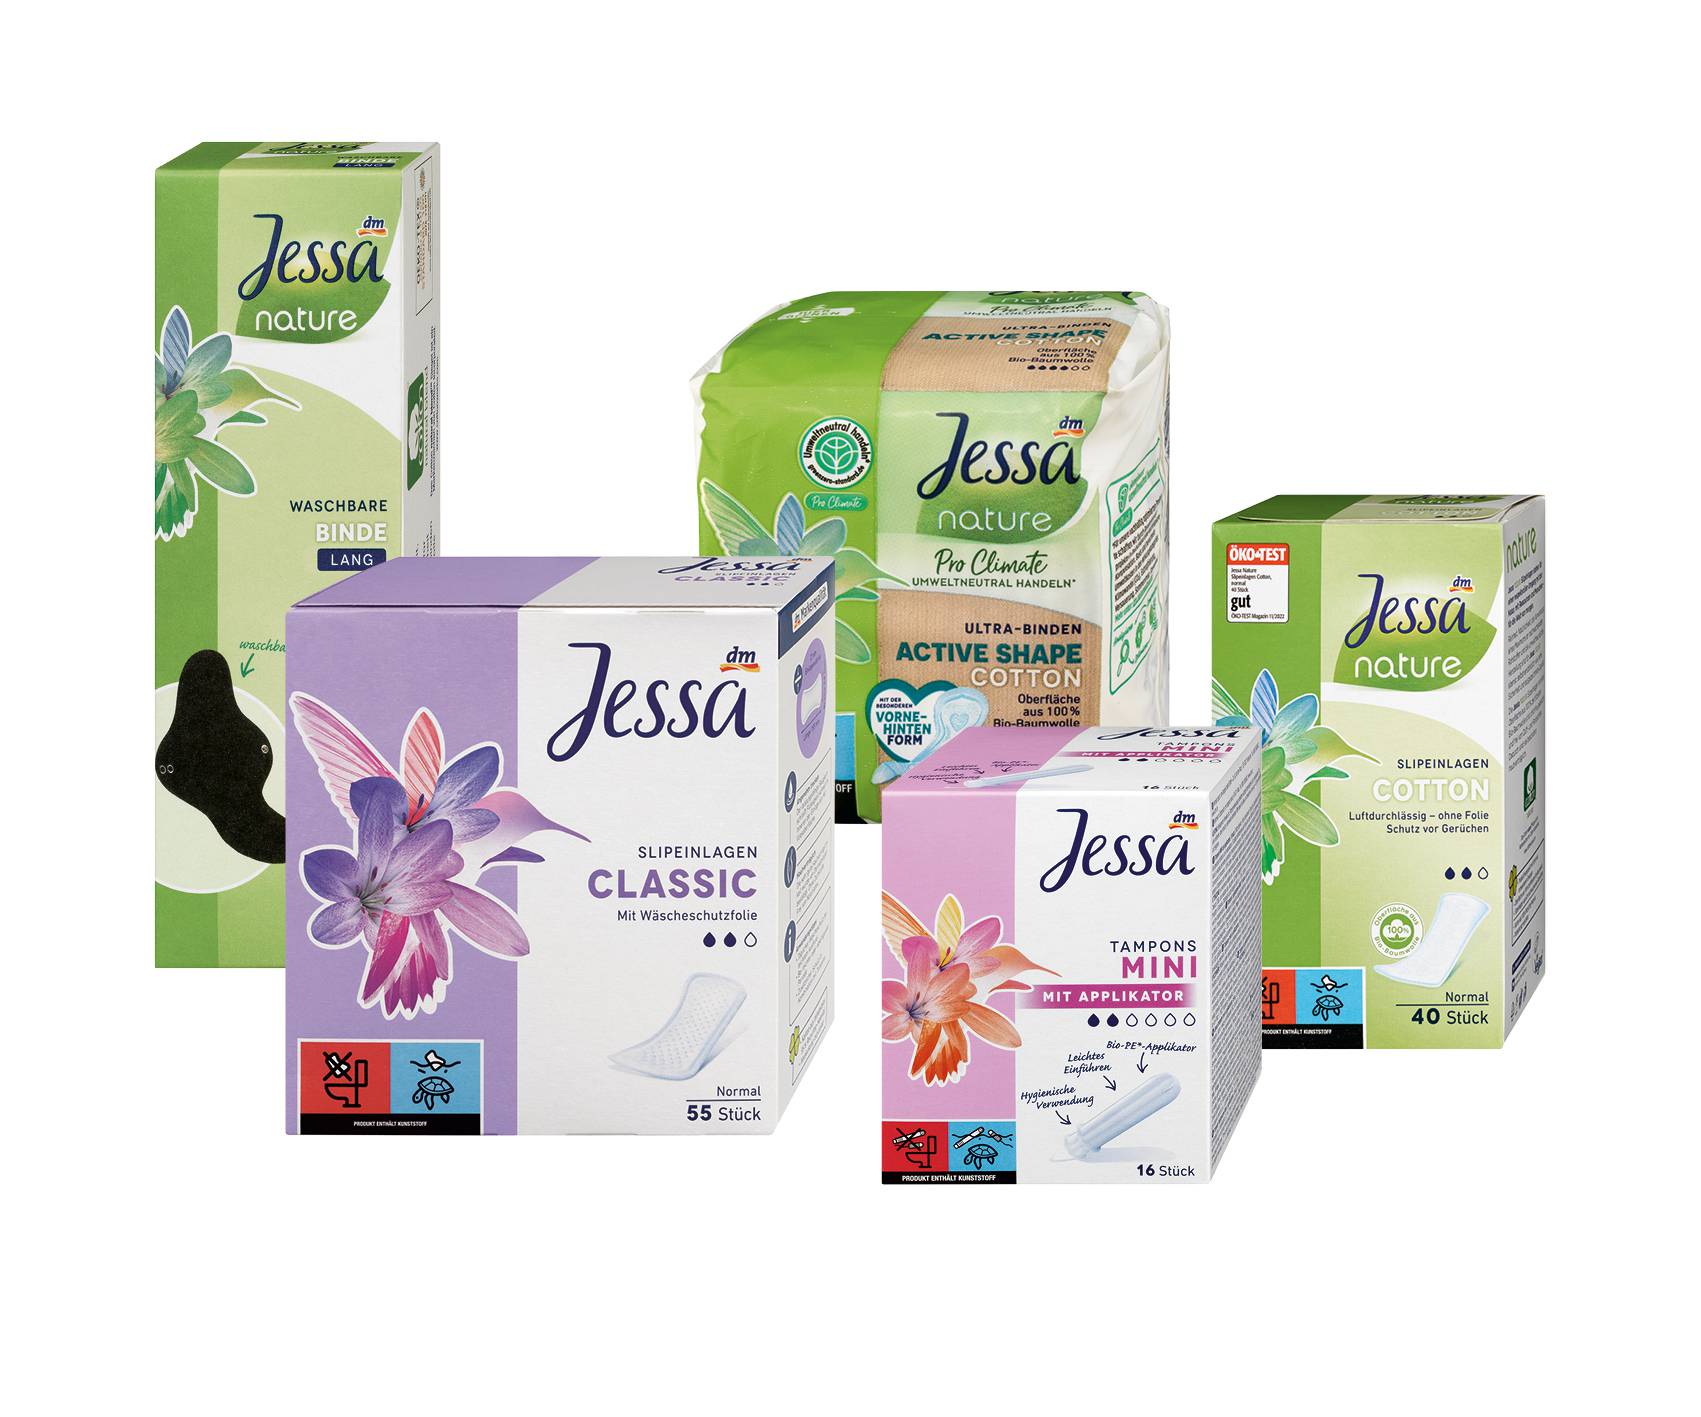 dm trajno snizio cijene proizvoda za žensku higijenu vlastite marke Jessa